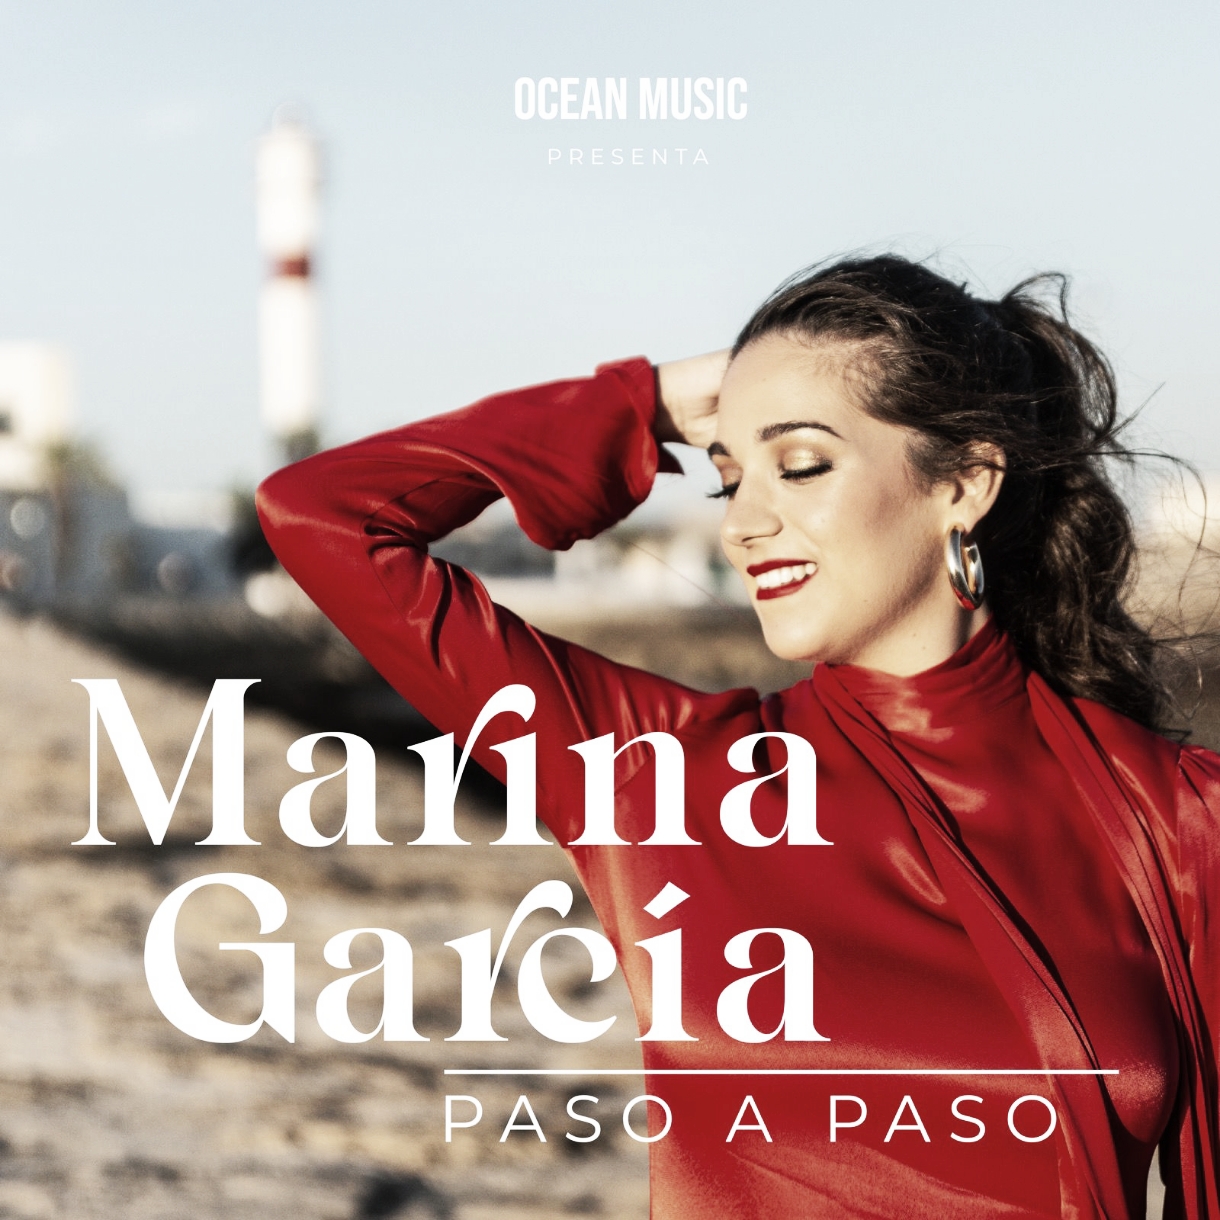 Entrevista a Marina García: “La música es mi manera de
disfrutar de la vida”